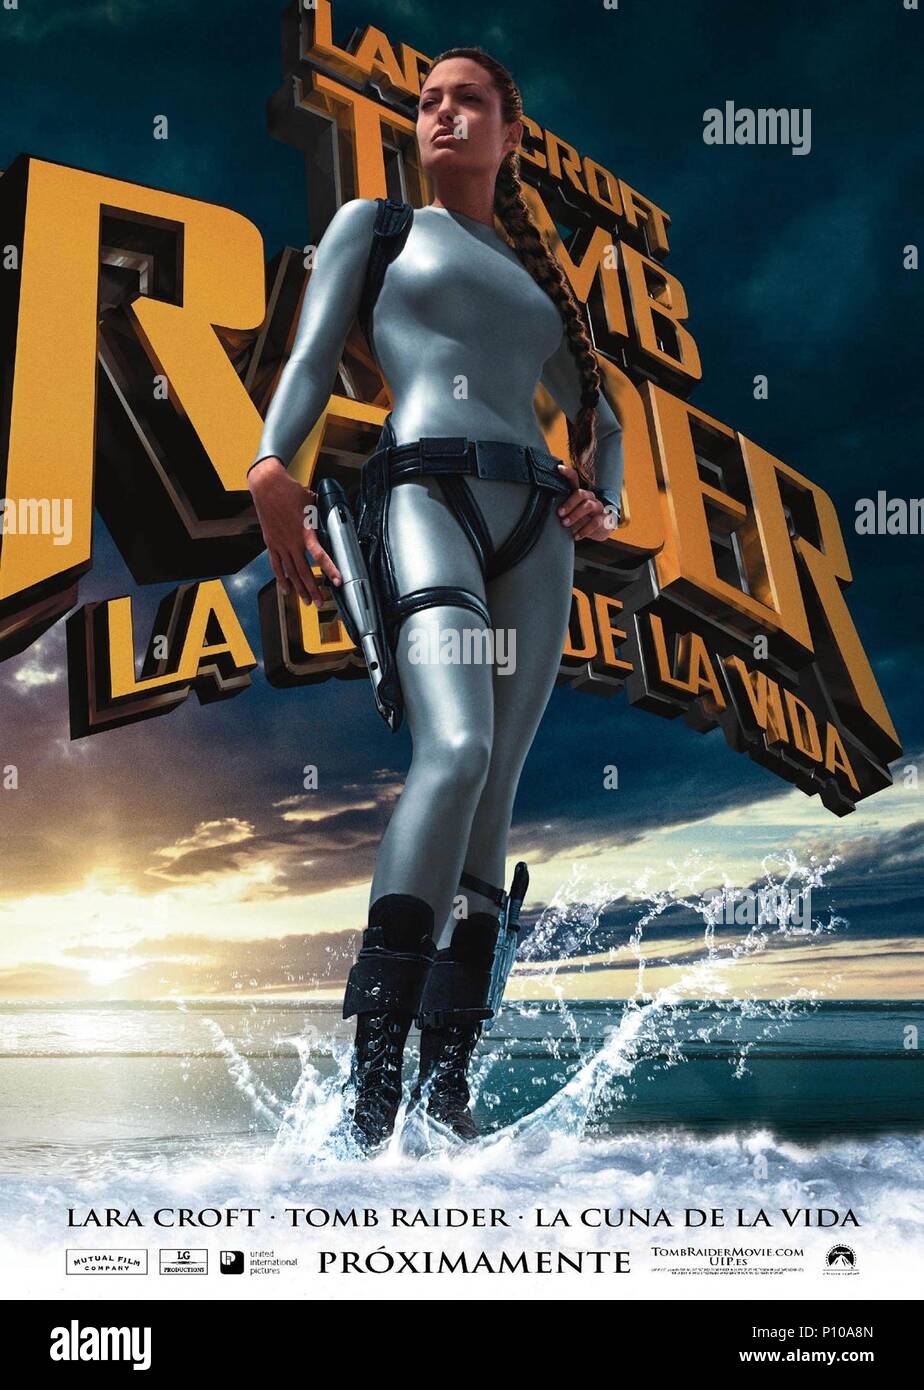 El título de la película original: Lara Croft Tomb Raider: LA CUNA DE LA  VIDA. Título en inglés: Lara Croft Tomb Raider: LA CUNA DE LA VIDA. El  director de cine: Jan